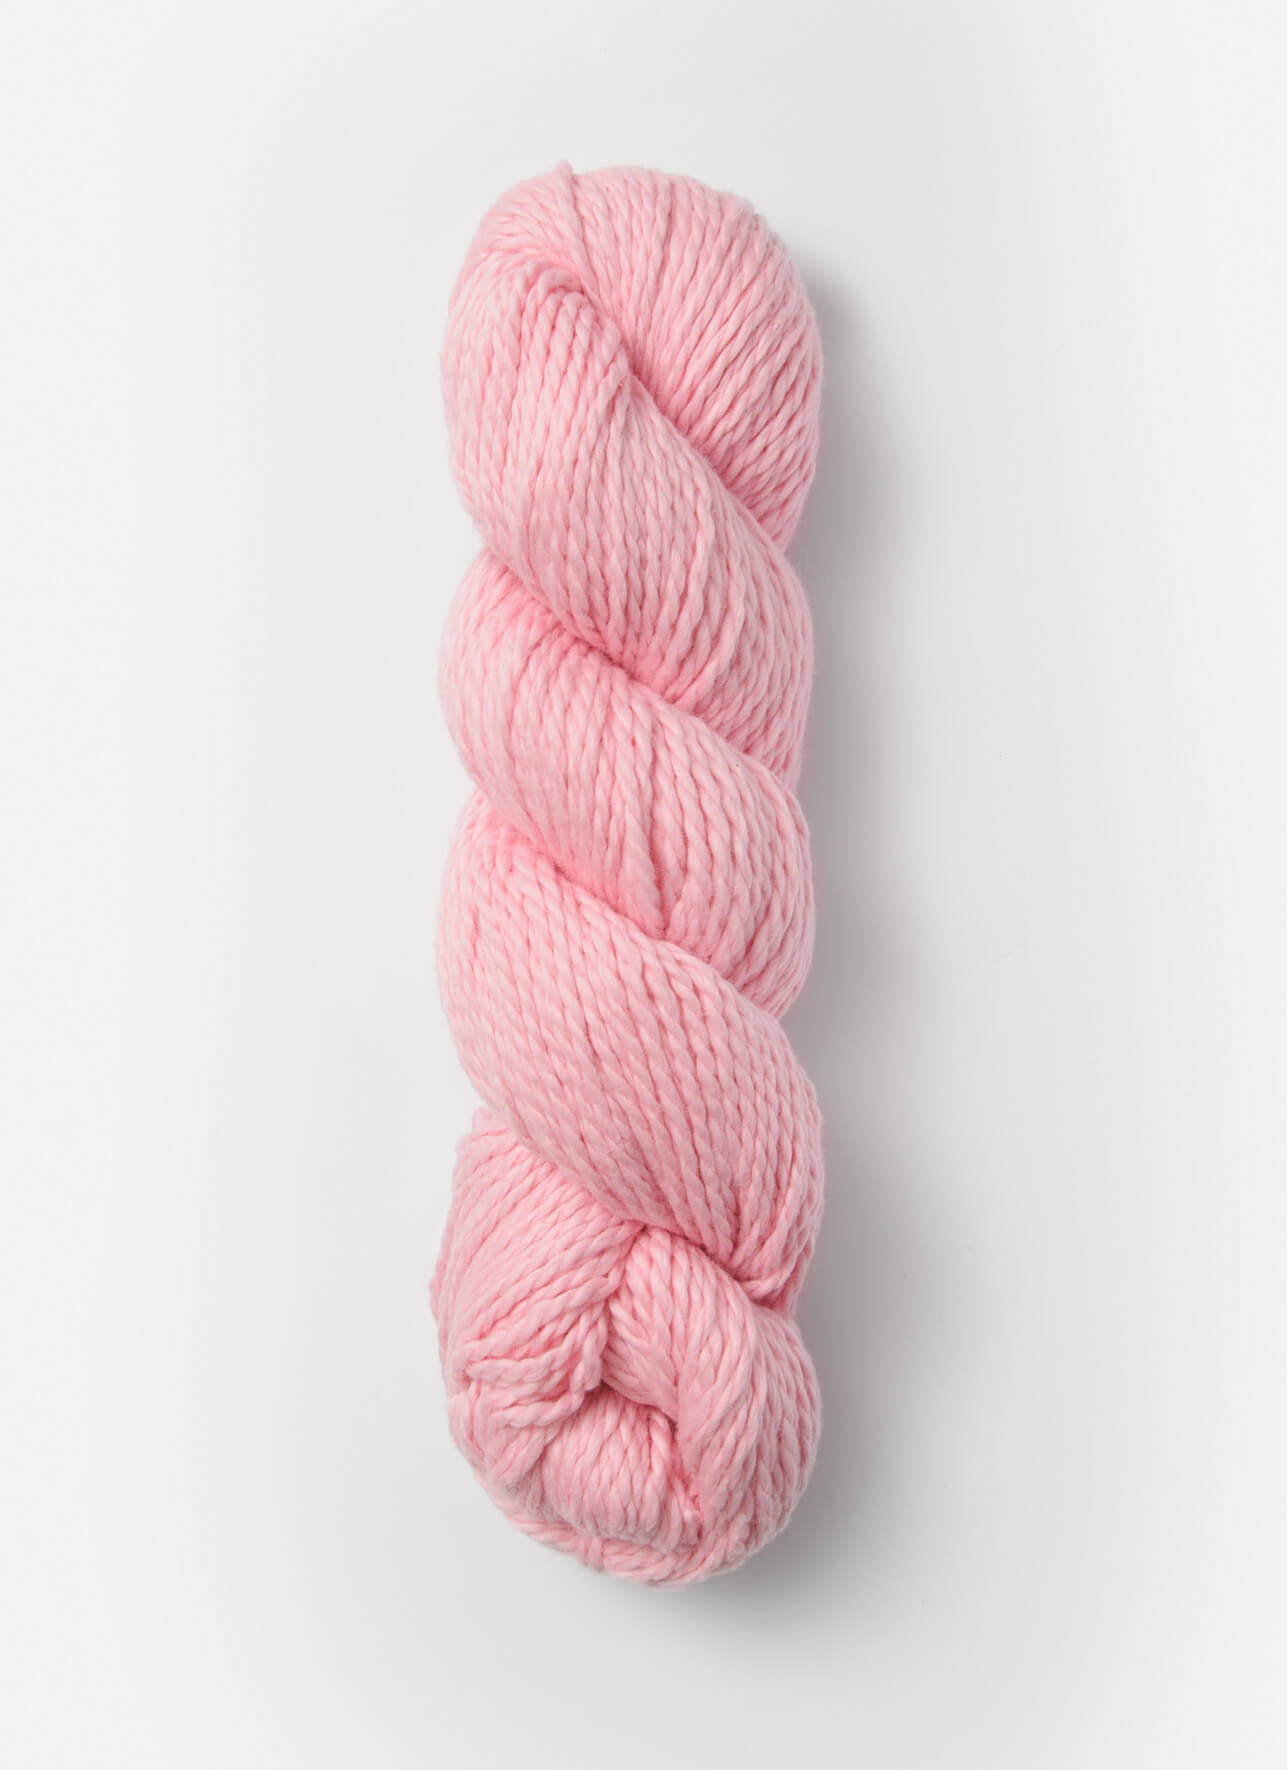 No. 642: Pink Parfait